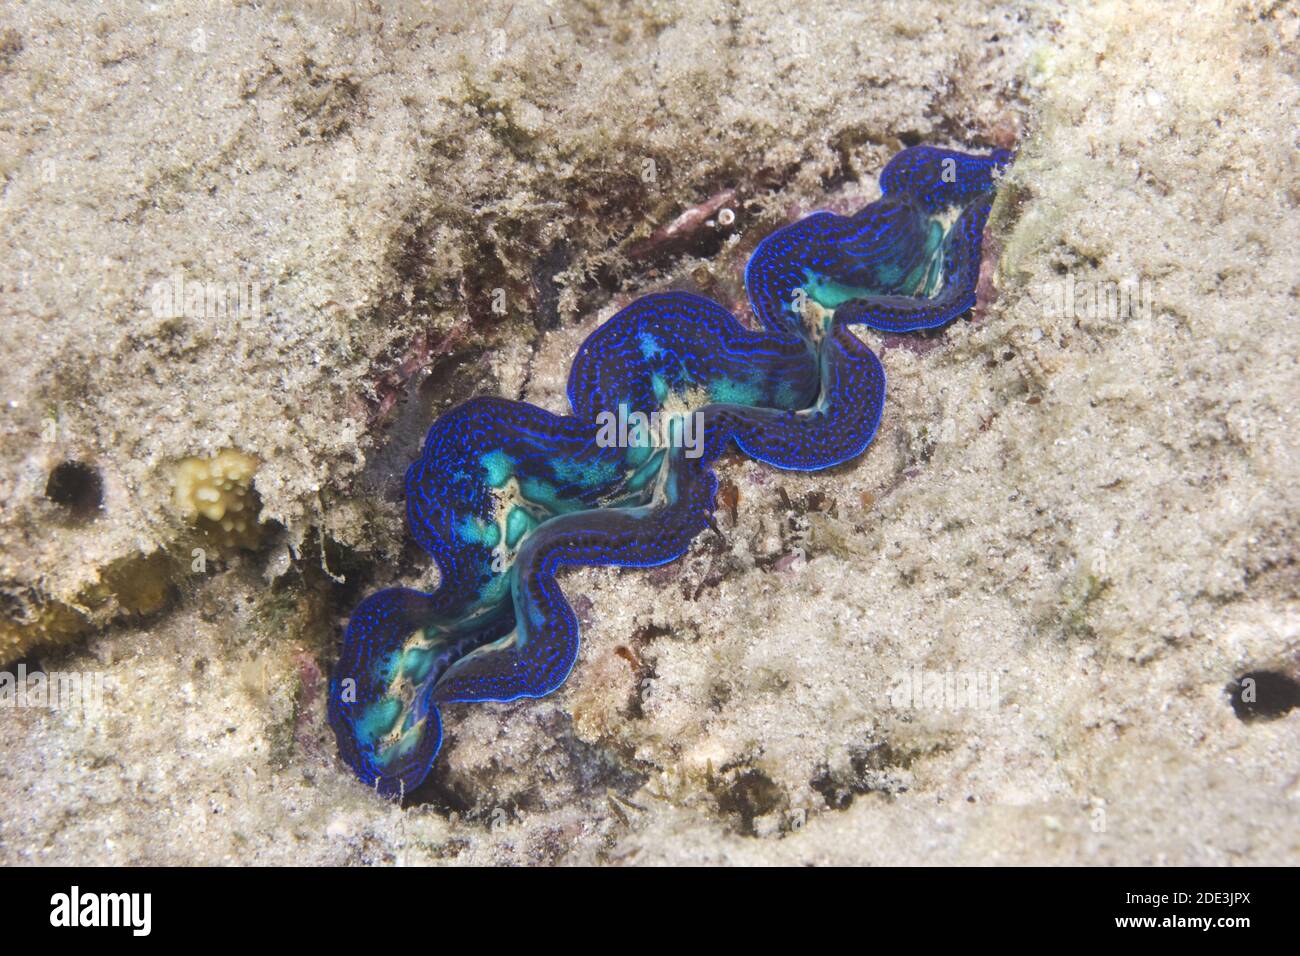 Riesige blaue Muschel: Tridacna sind die größten lebenden Muscheln. In der Gattung Tridacna gibt es tatsächlich mehrere Arten von 'Riesenmuscheln' Stockfoto